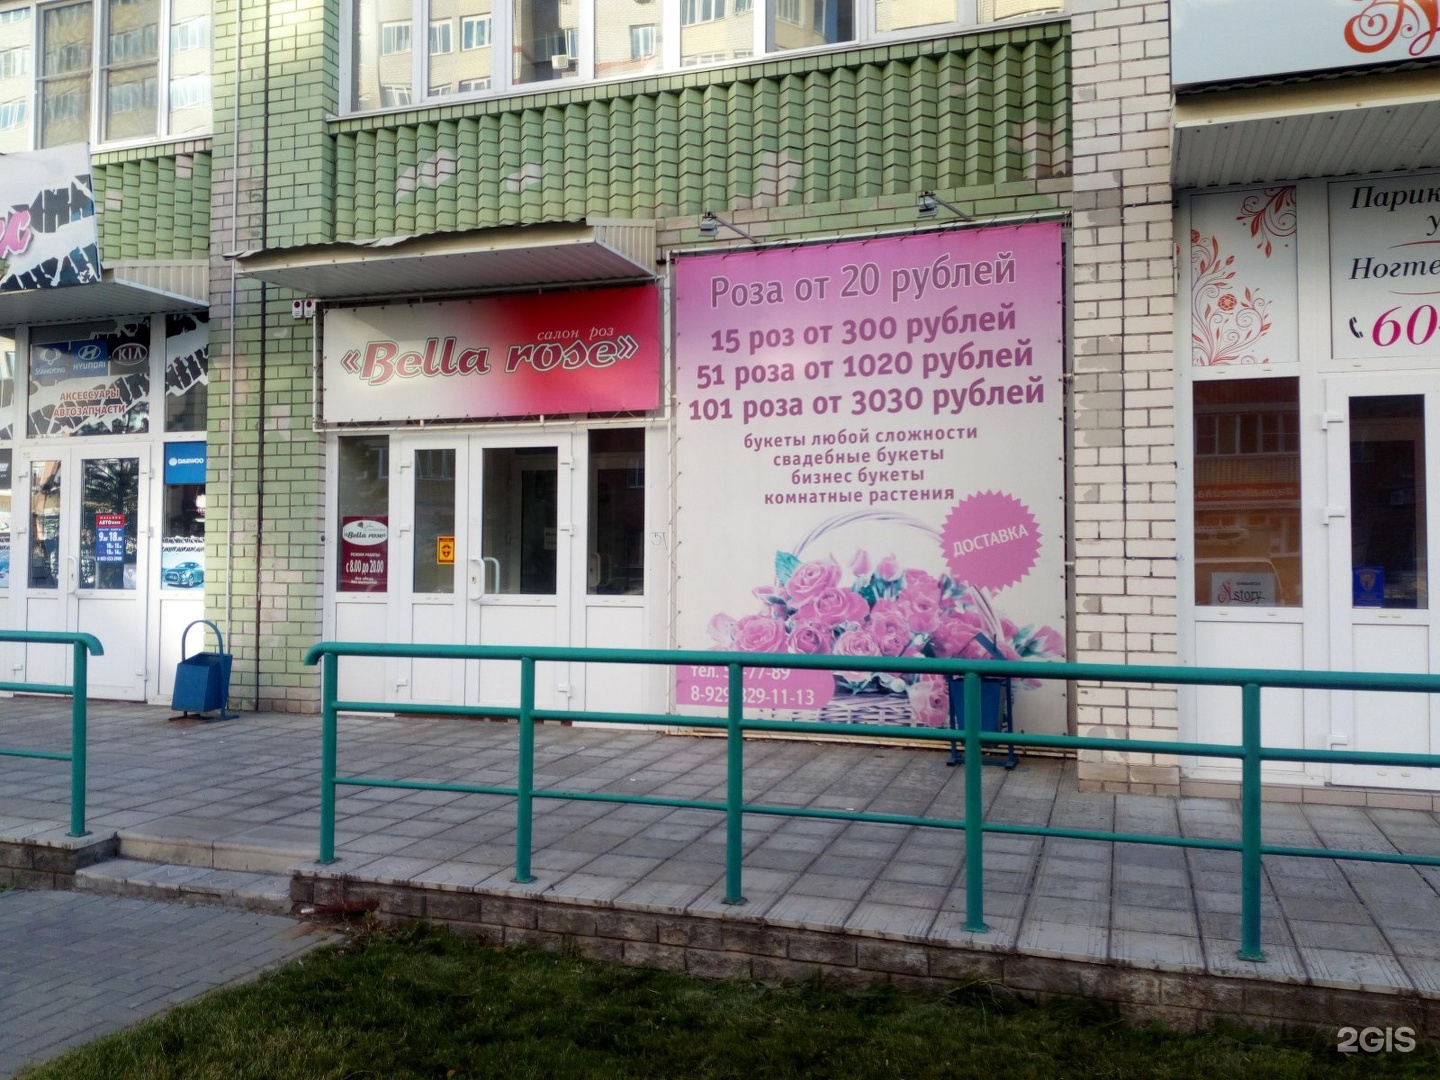 Люблю цветы барнаул. Магазин люблю цветы в Барнауле. Лапландия Барнаул цветочный магазин. Бийск ул Ленина 252/2 люблю цветы салон.